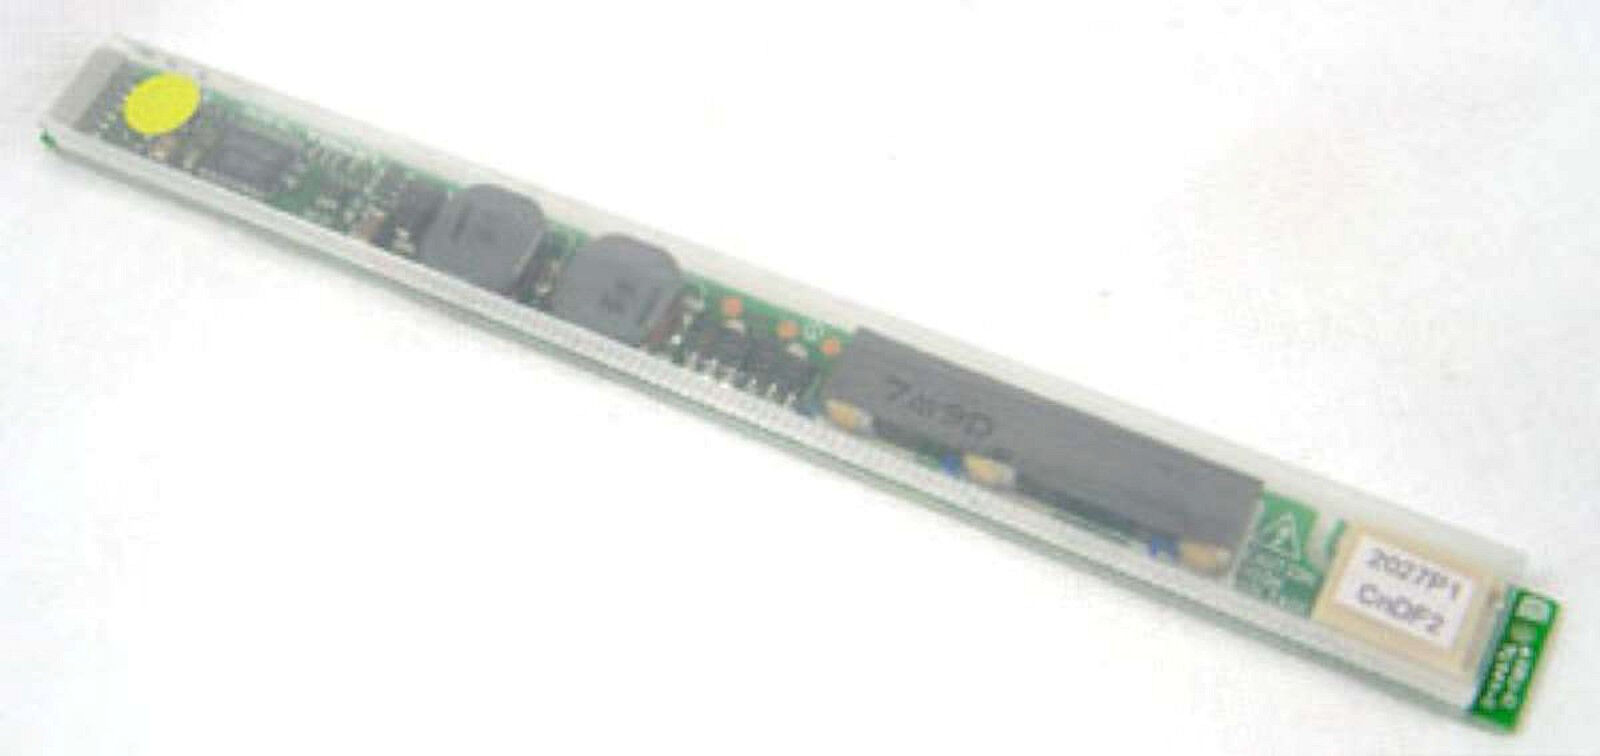 Sony Vaio LCD INVERTER BOARD VGN-S170 S150 S250 S260 S270 PCG-TR3 TR5 Z1VA V505 - $7.10